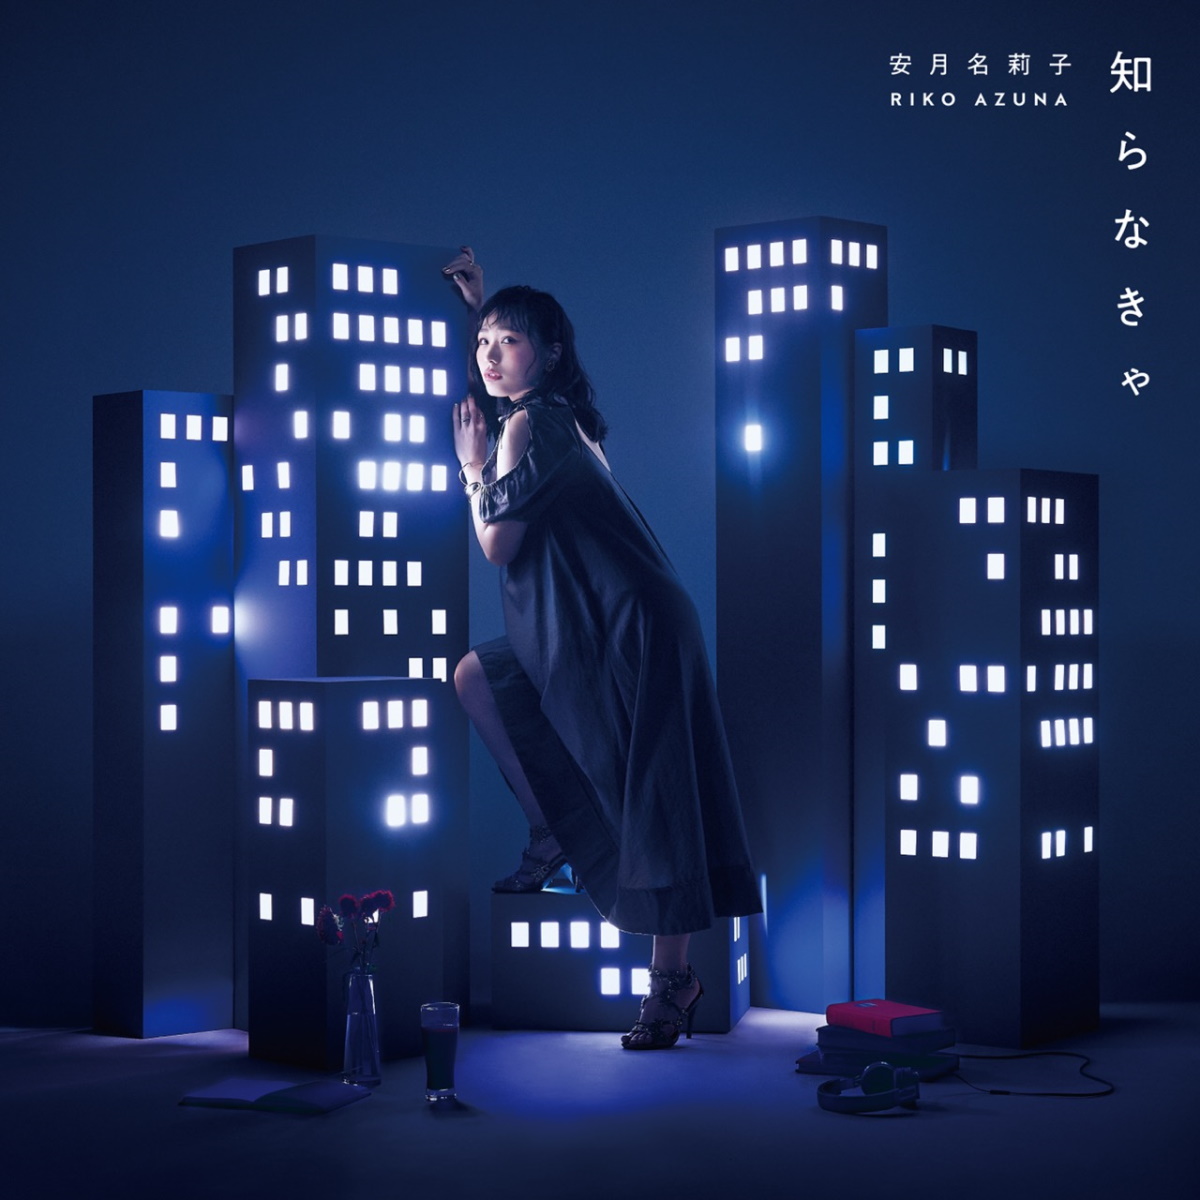 Cover for『Riko Azuna - Shiranai』from the release『Shiranakya』